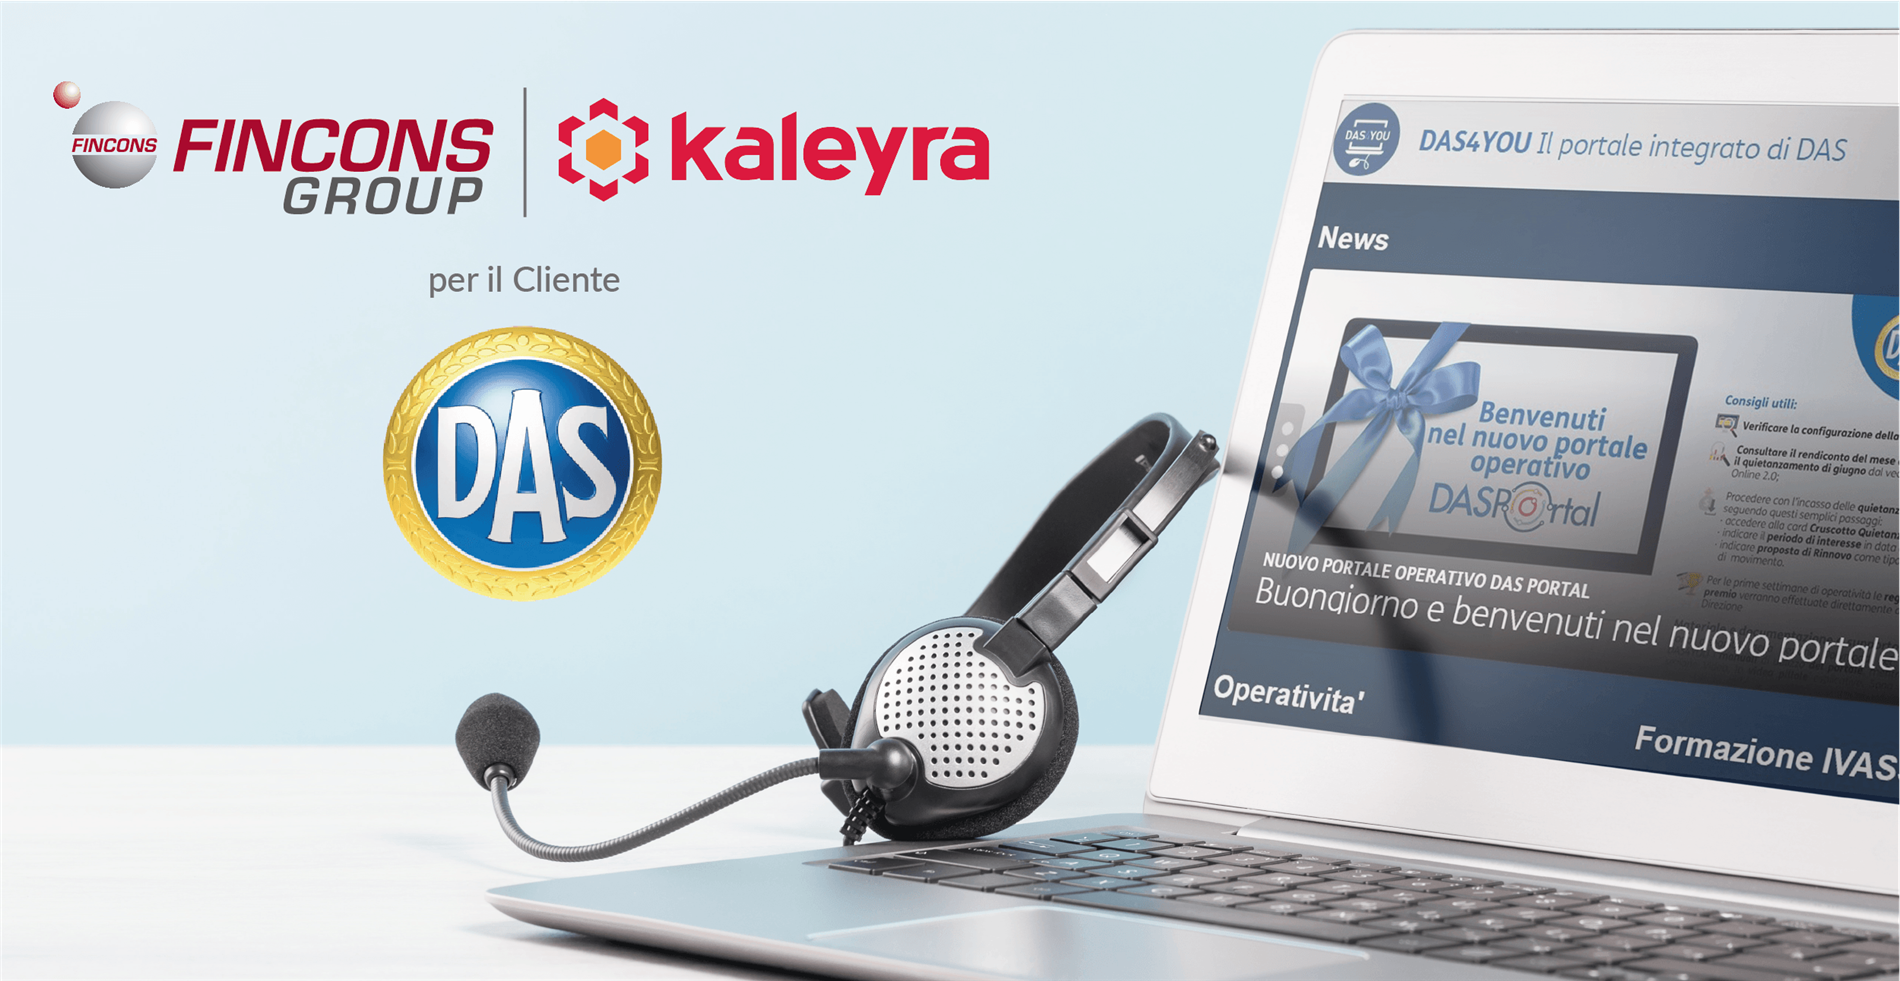 Fincons e Kaleyra a fianco di DAS per favorire la collaborazione digitale tra la Compagnia ed i suoi Agenti